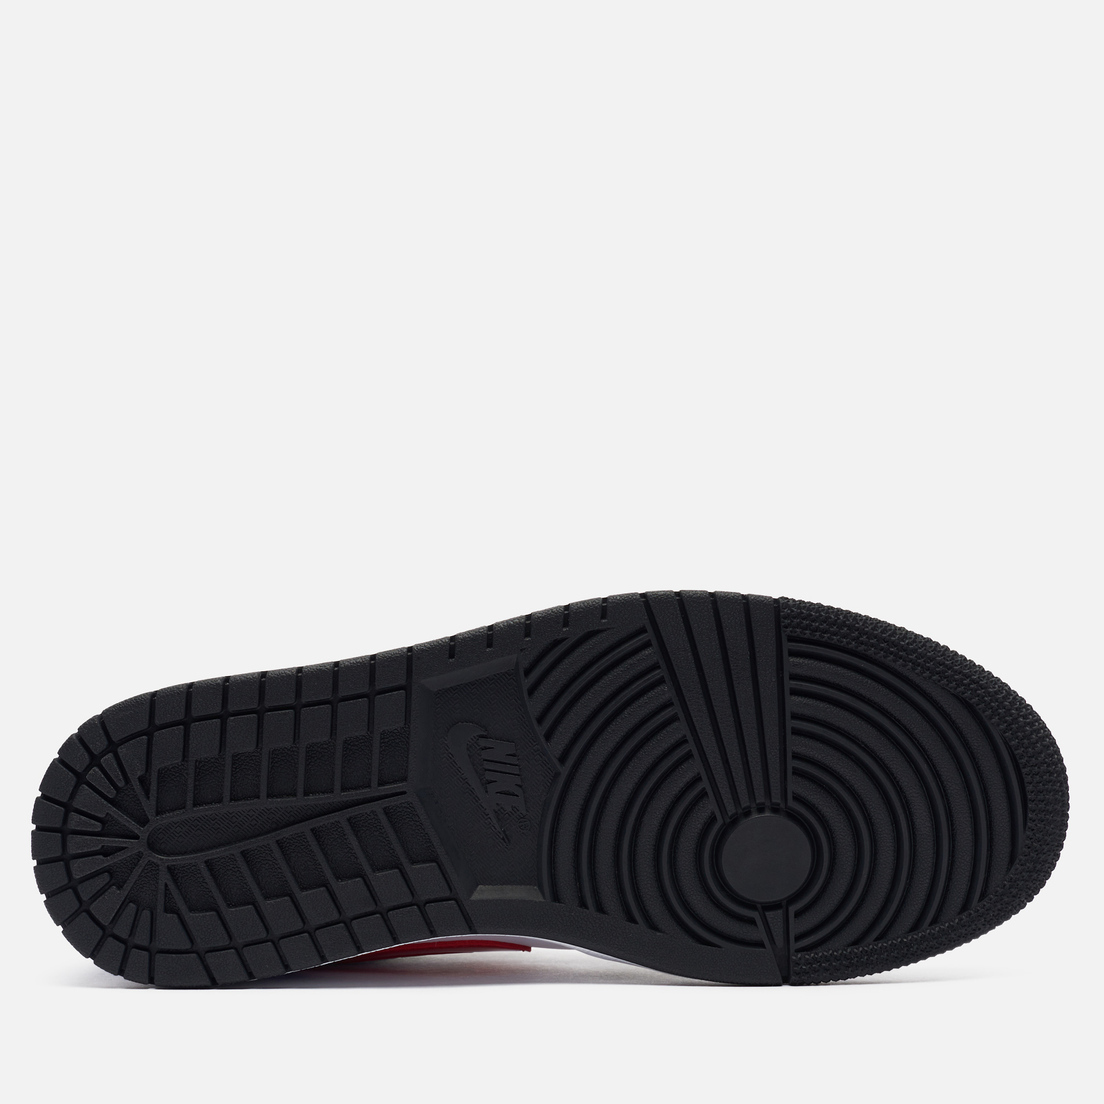 Jordan Женские кроссовки Wmns Air Jordan 1 Low SE Multi-Color Black Toe